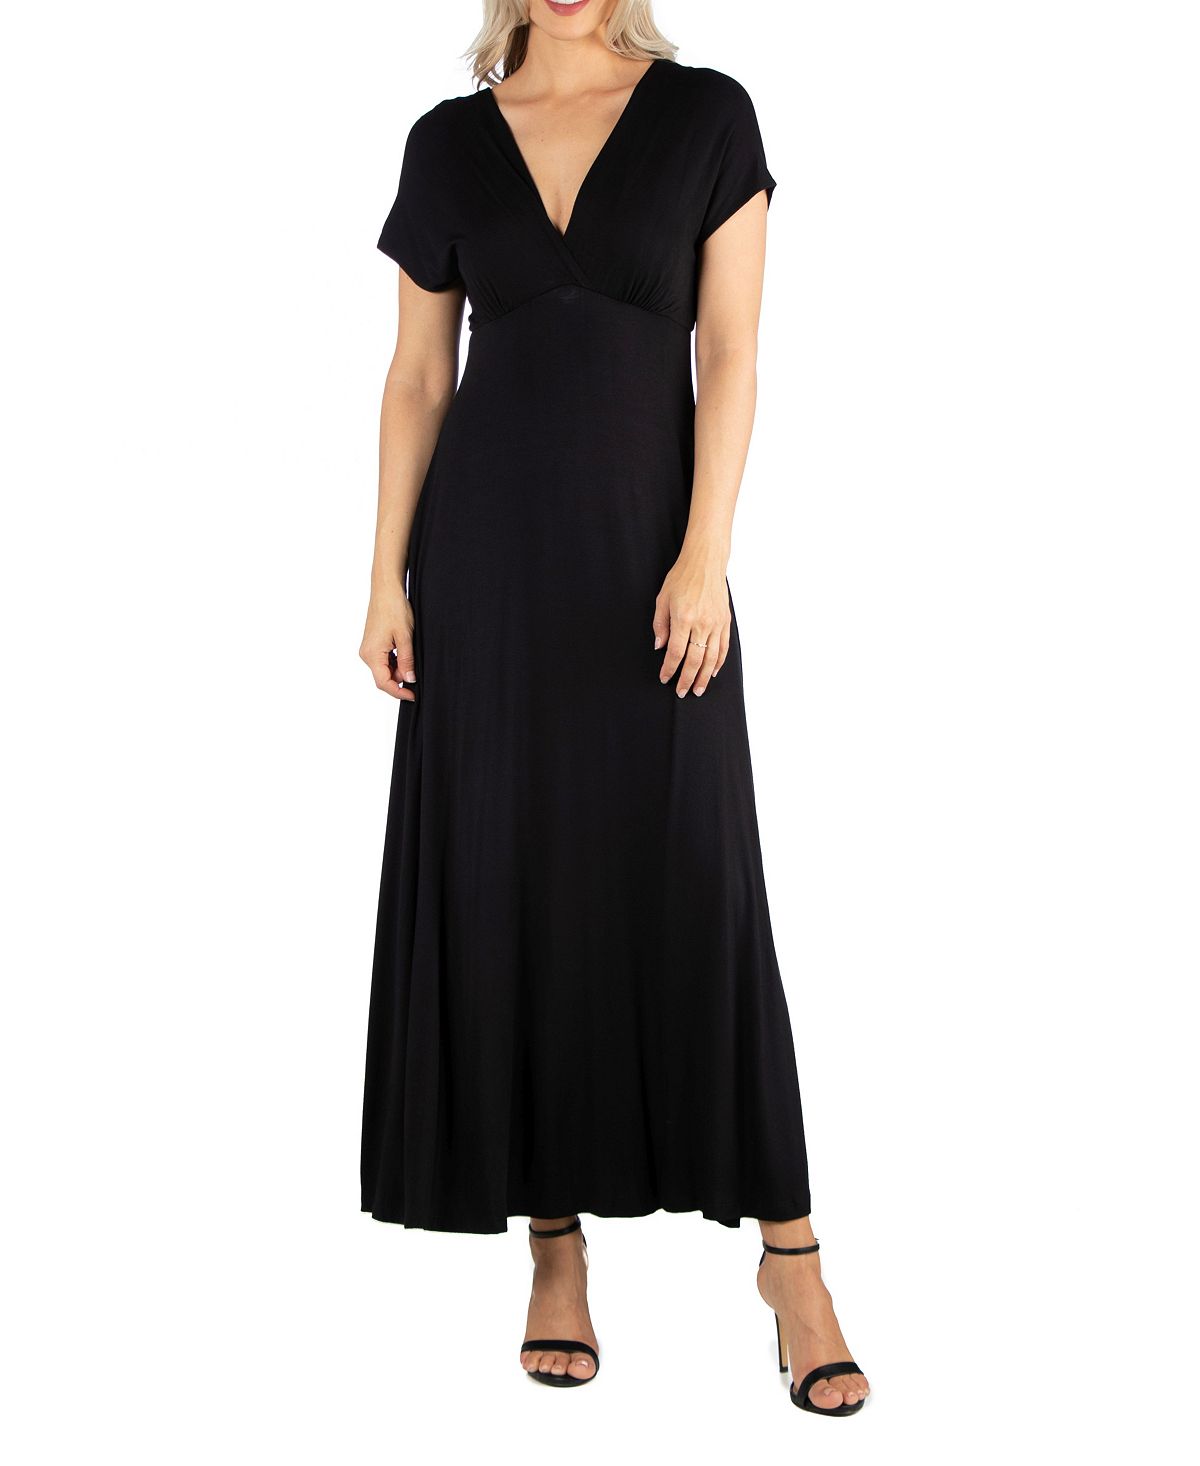 женское вечернее платье с v образным вырезом и юбкой годе Женское макси-платье с короткими рукавами и v-образным вырезом 24seven Comfort Apparel, черный